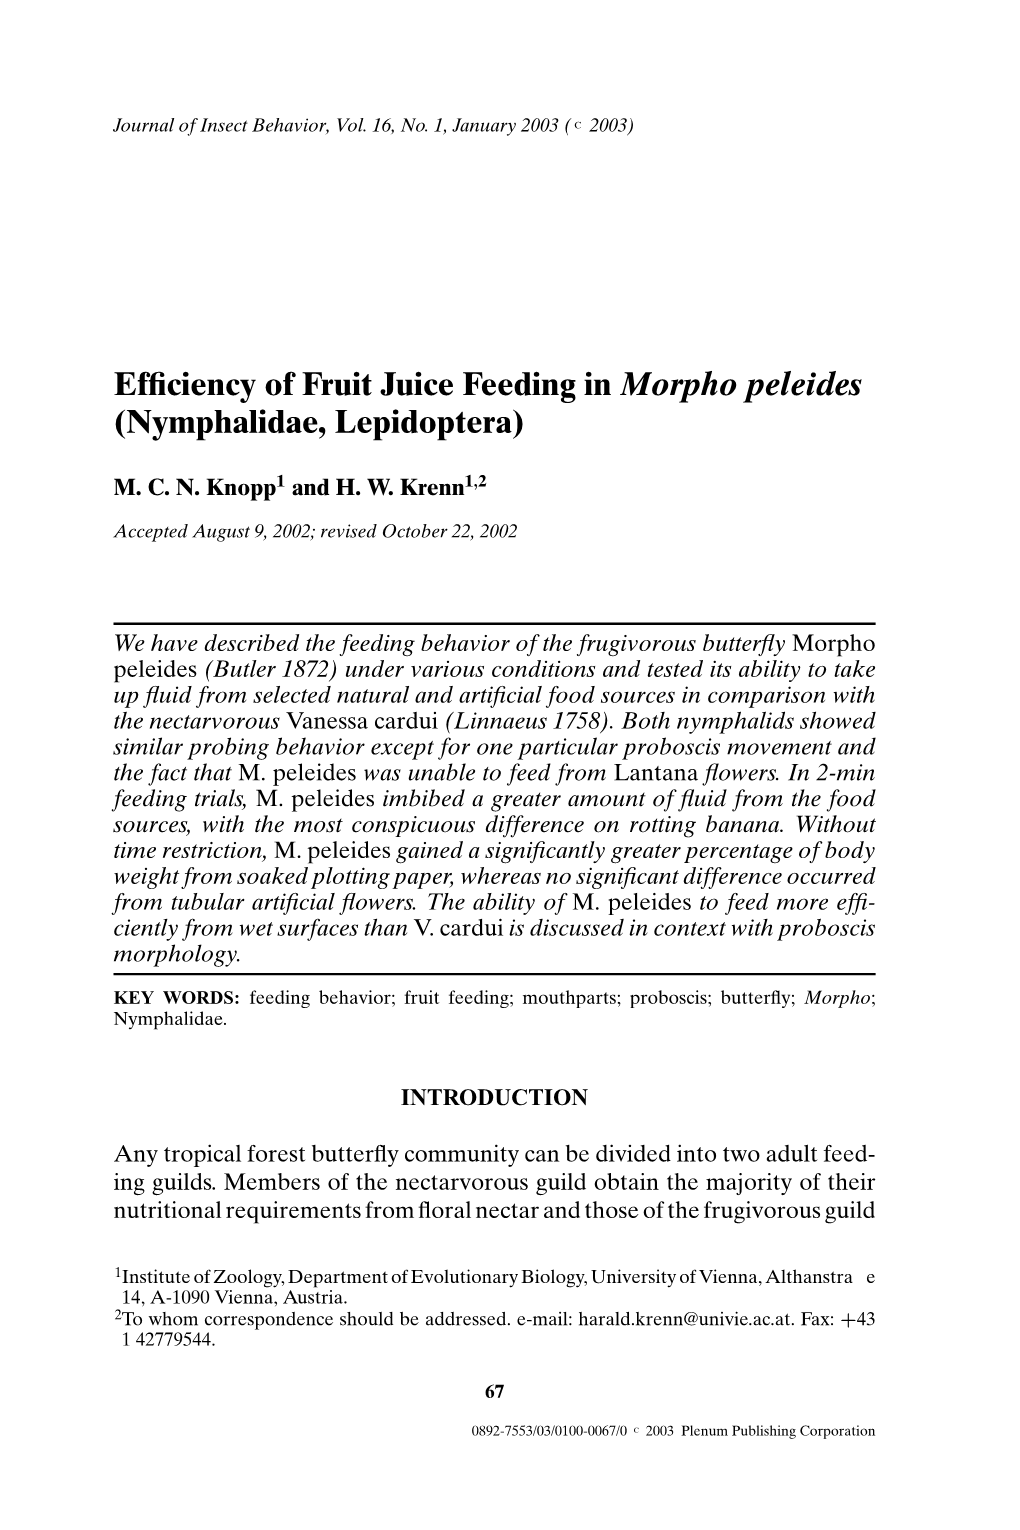 Efficiency of Fruit Juice Feeding in Morpho Peleides (Nymphalidae